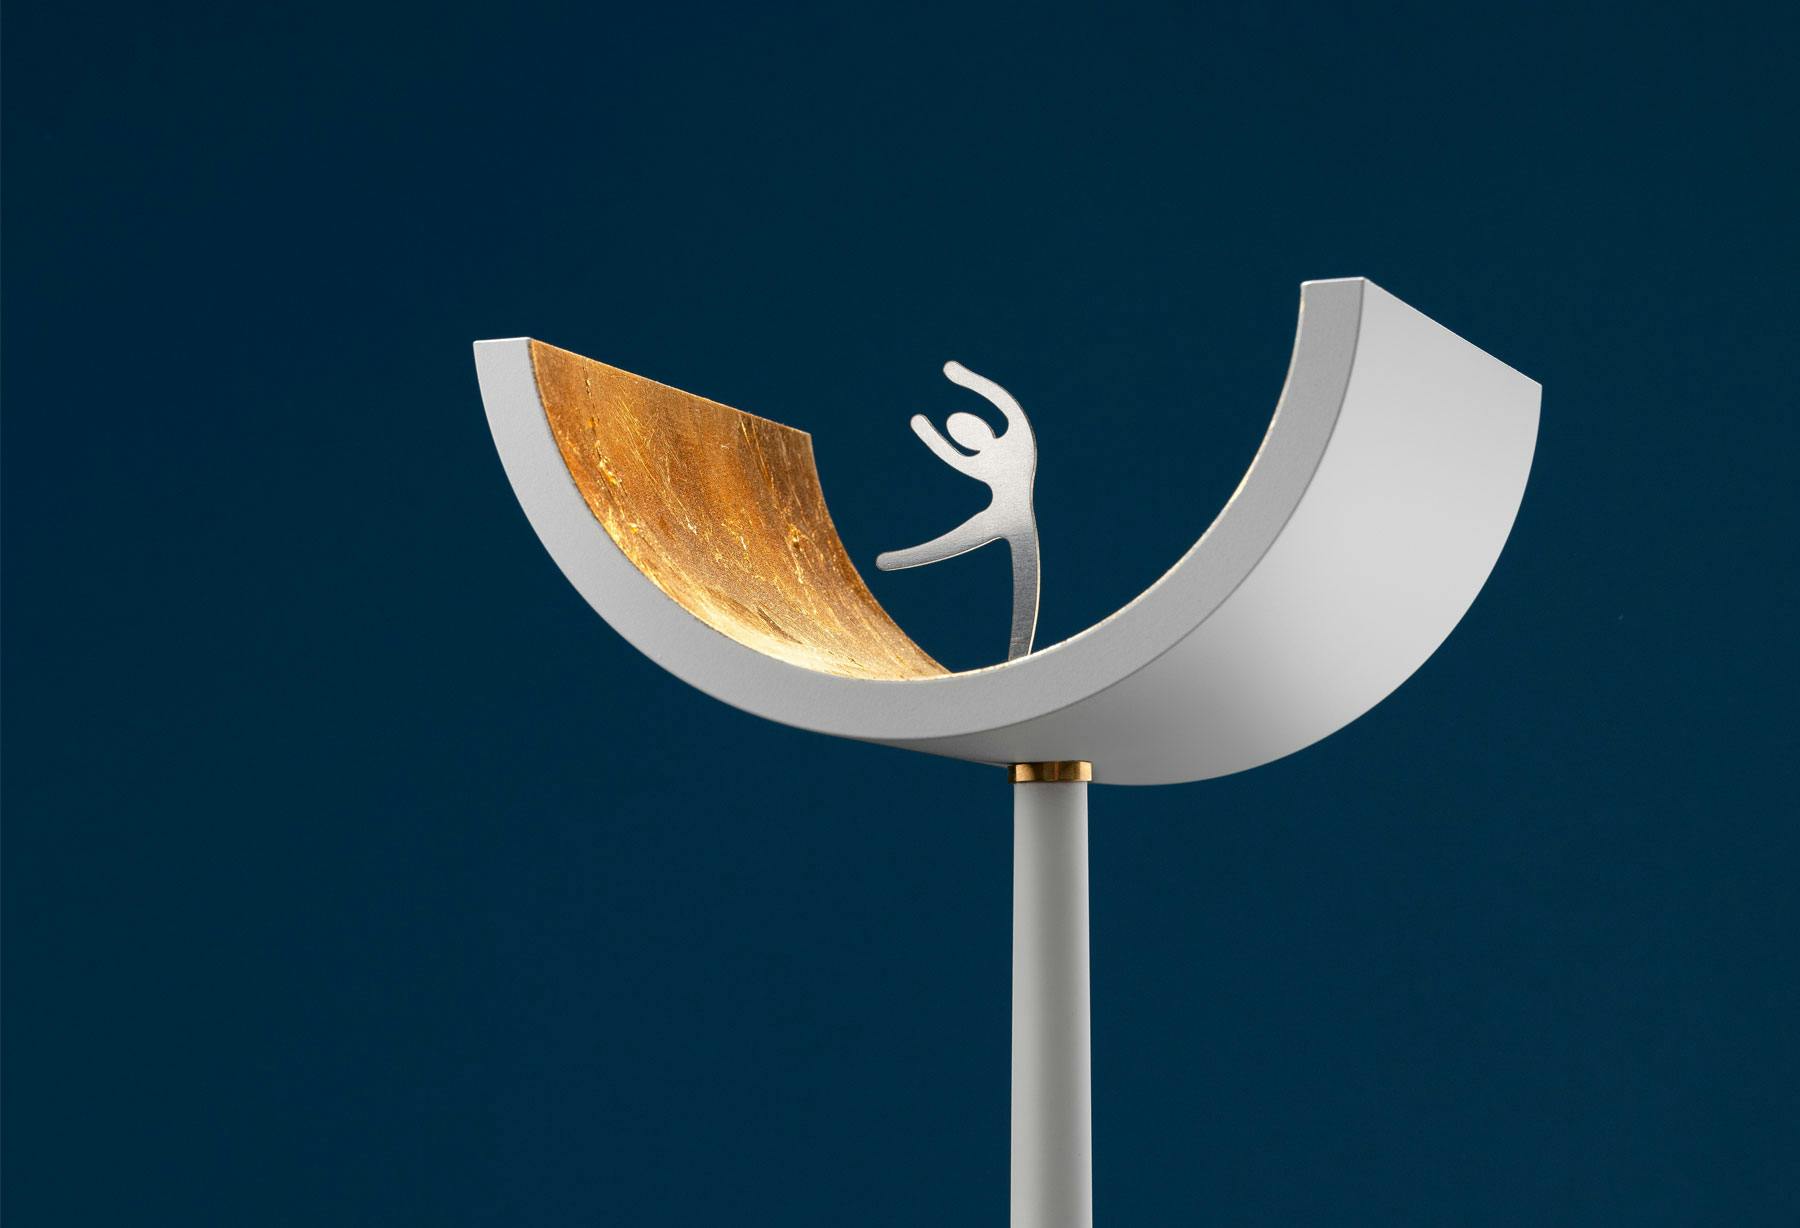 <p>Светильник U получил одну из самых престижных международных наград в области дизайна и экспонировался в Афинах на выставке “The Annual Good Design Show 2021”</p>
